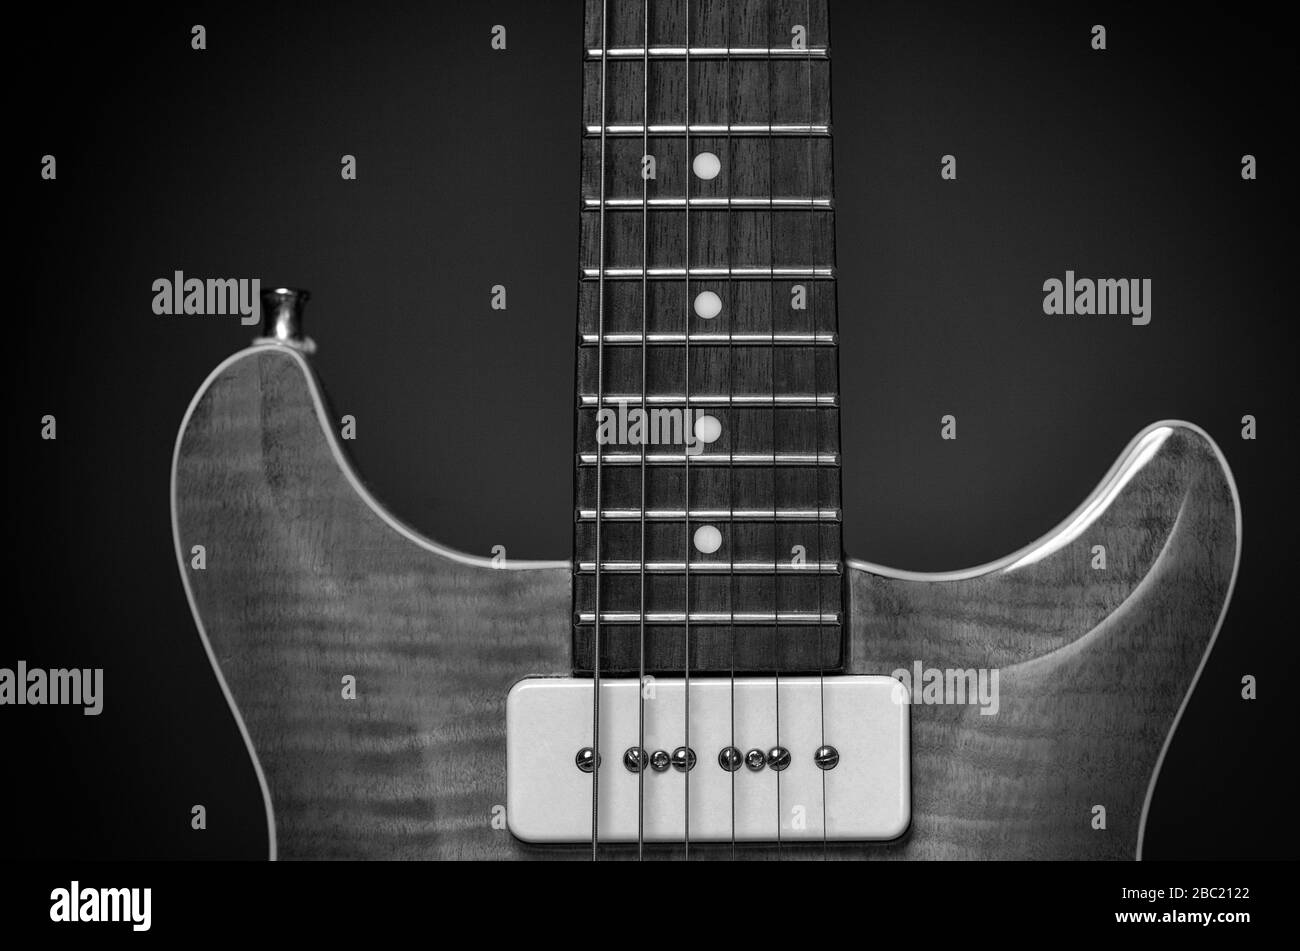 Detalle imagen de una guitarra eléctrica clásica y clásica Foto de stock